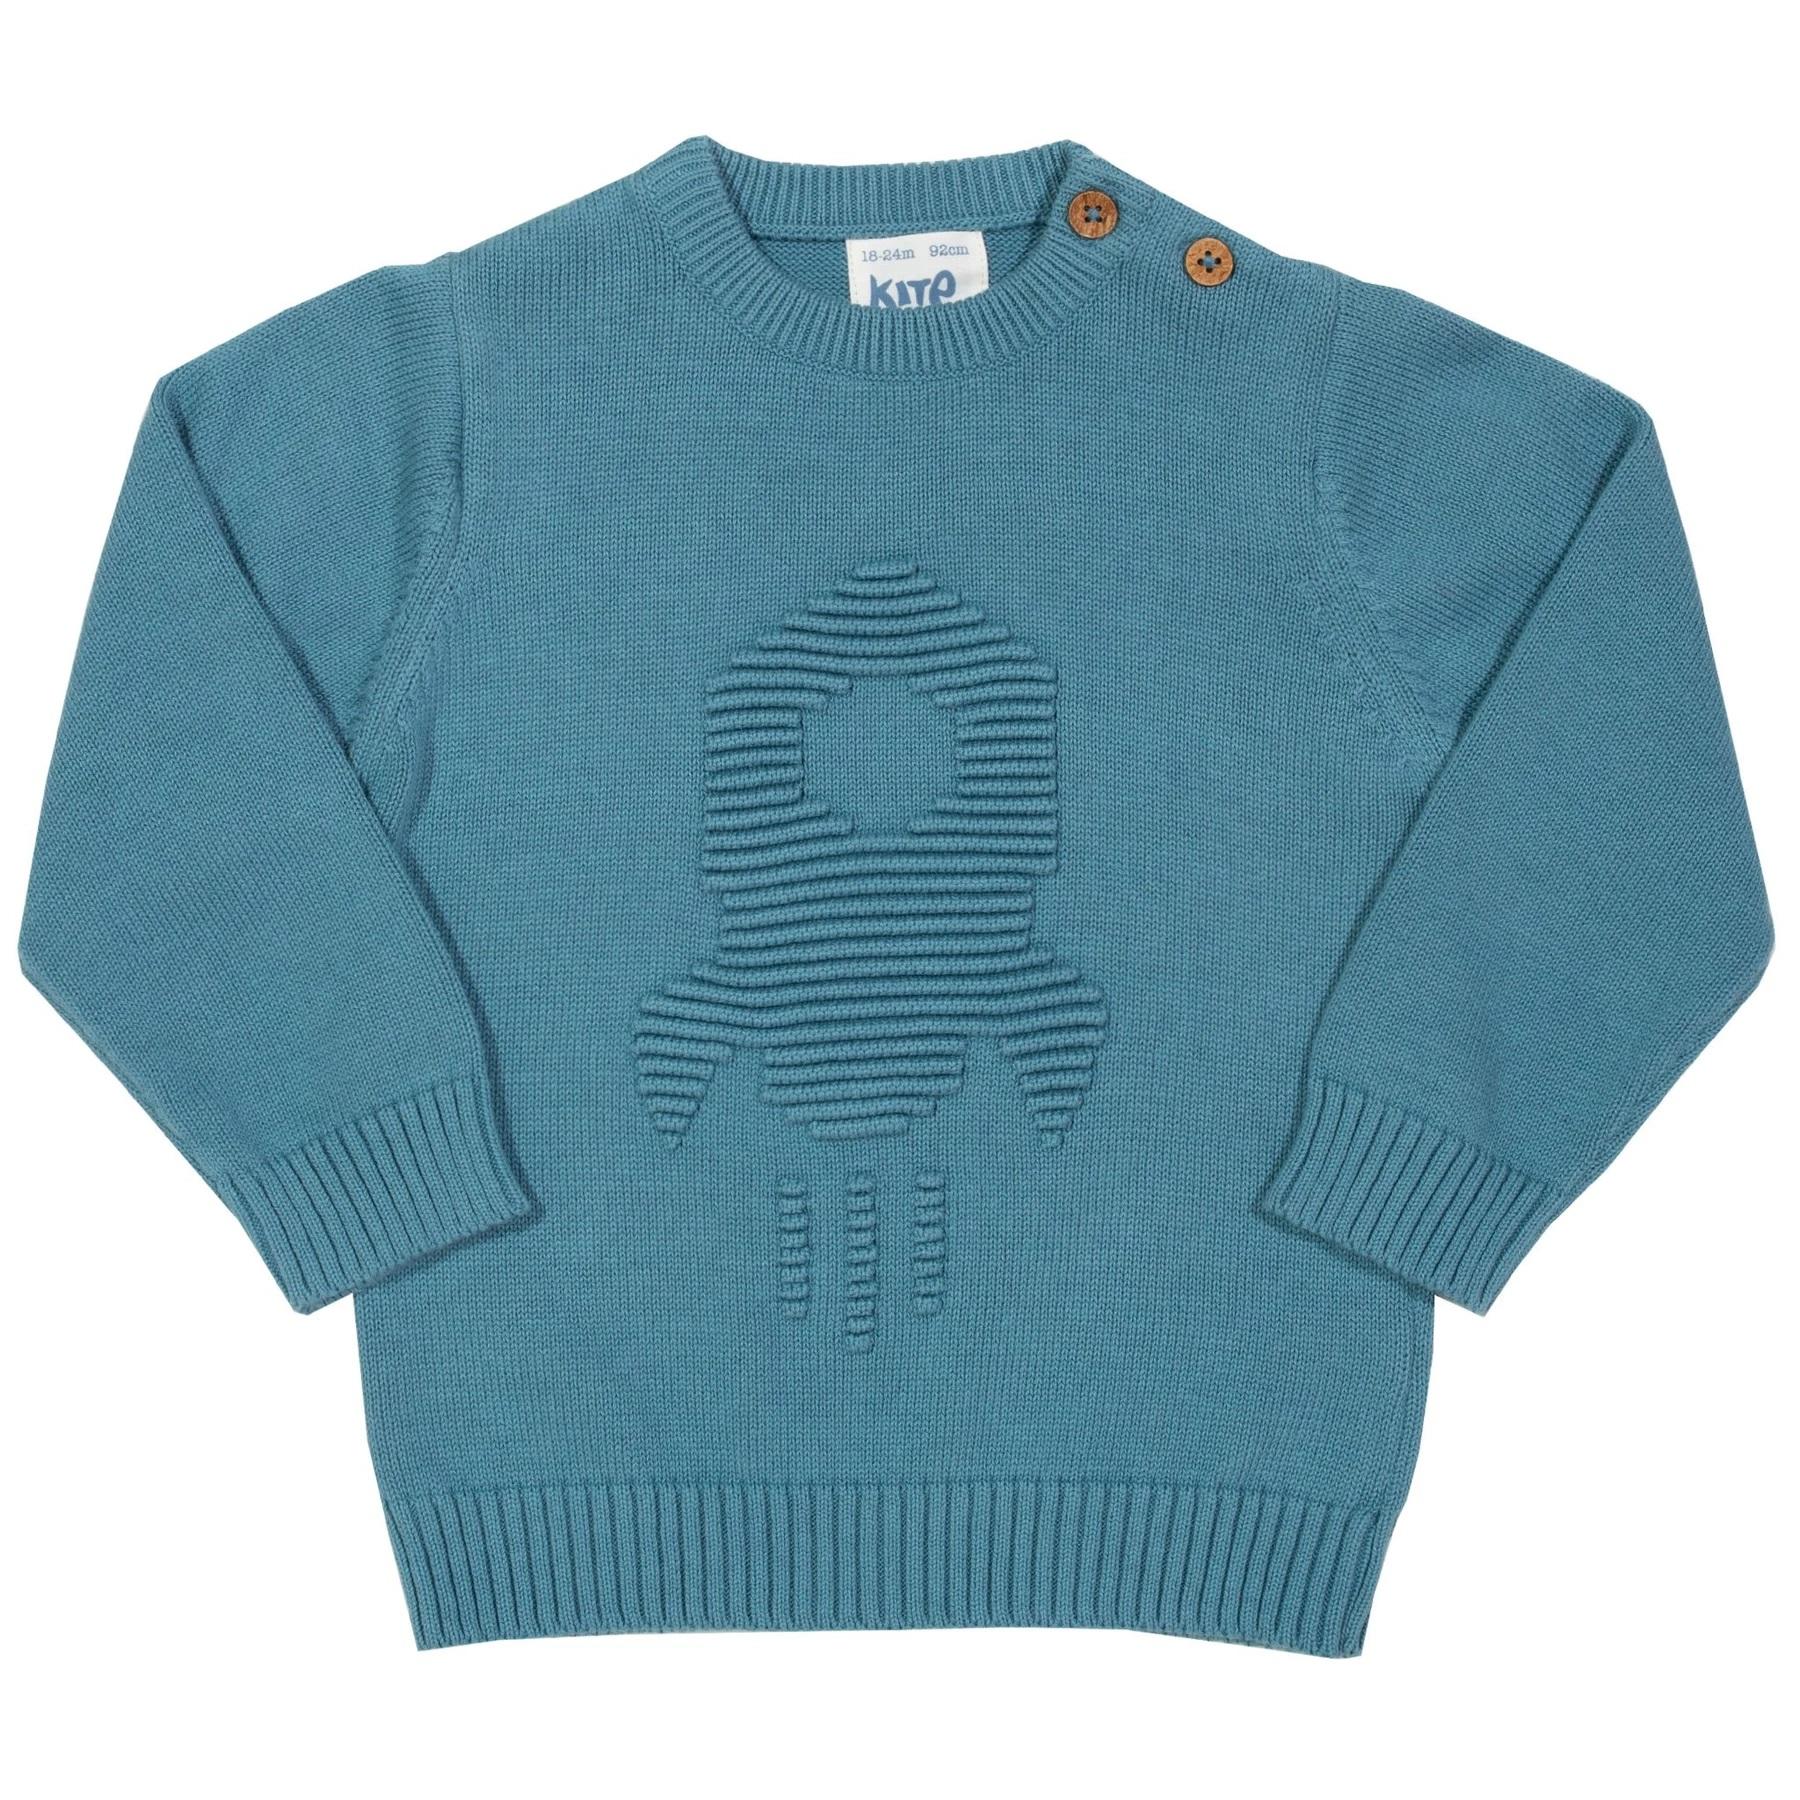 Abbigliamento Abbigliamento bambino Maglioni Boy Alpaca Jumper Sweater/Pullover Fire engine Boy Alpaca Sweater Fire engine motif 